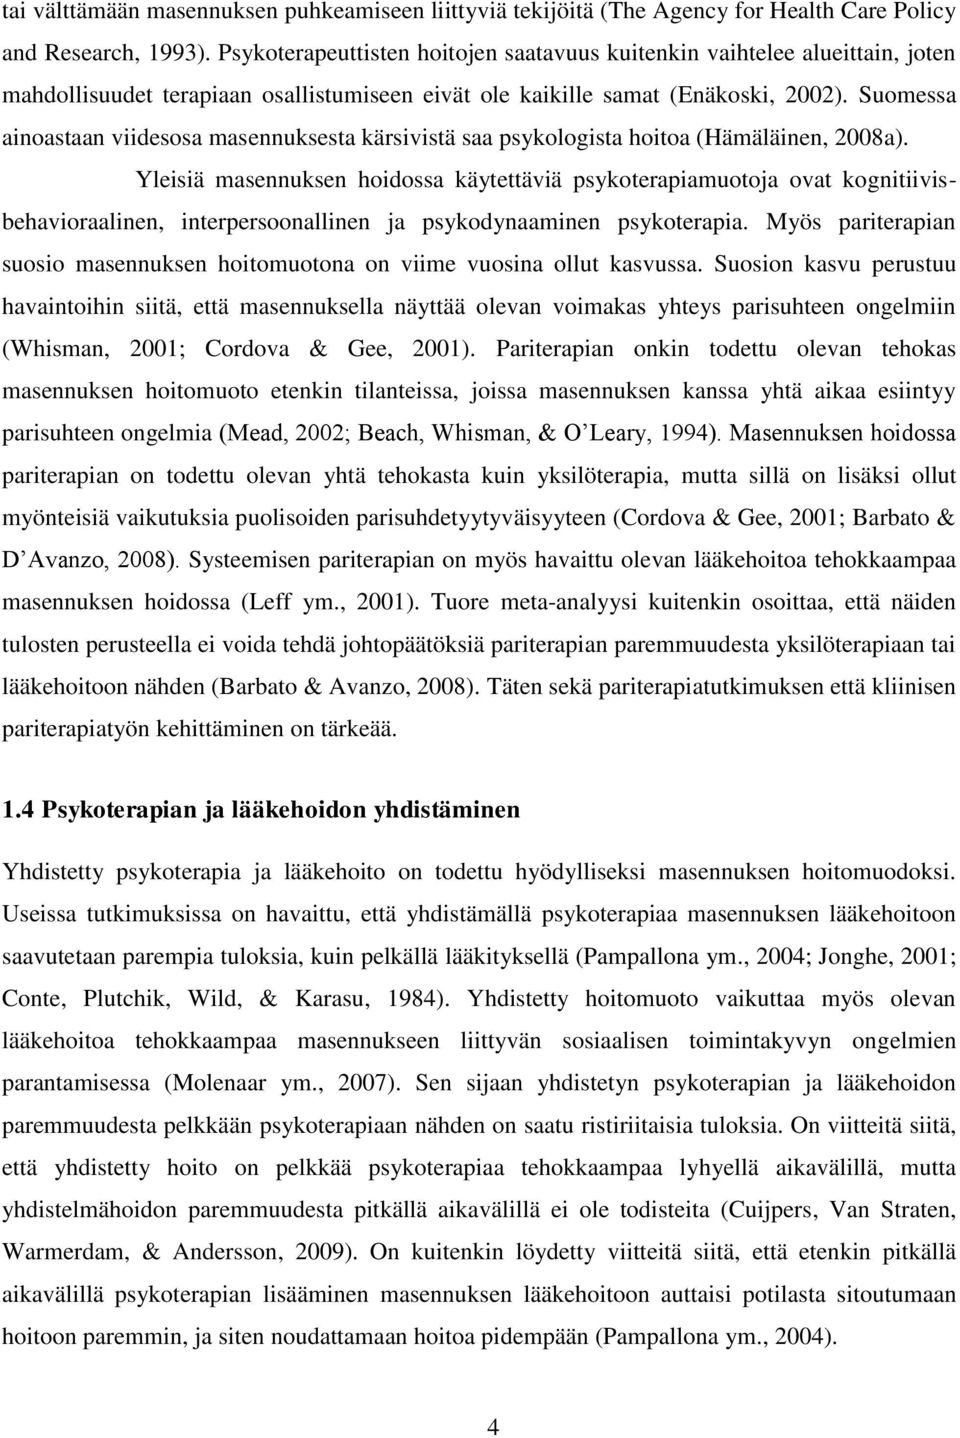 Suomessa ainoastaan viidesosa masennuksesta kärsivistä saa psykologista hoitoa (Hämäläinen, 2008a).